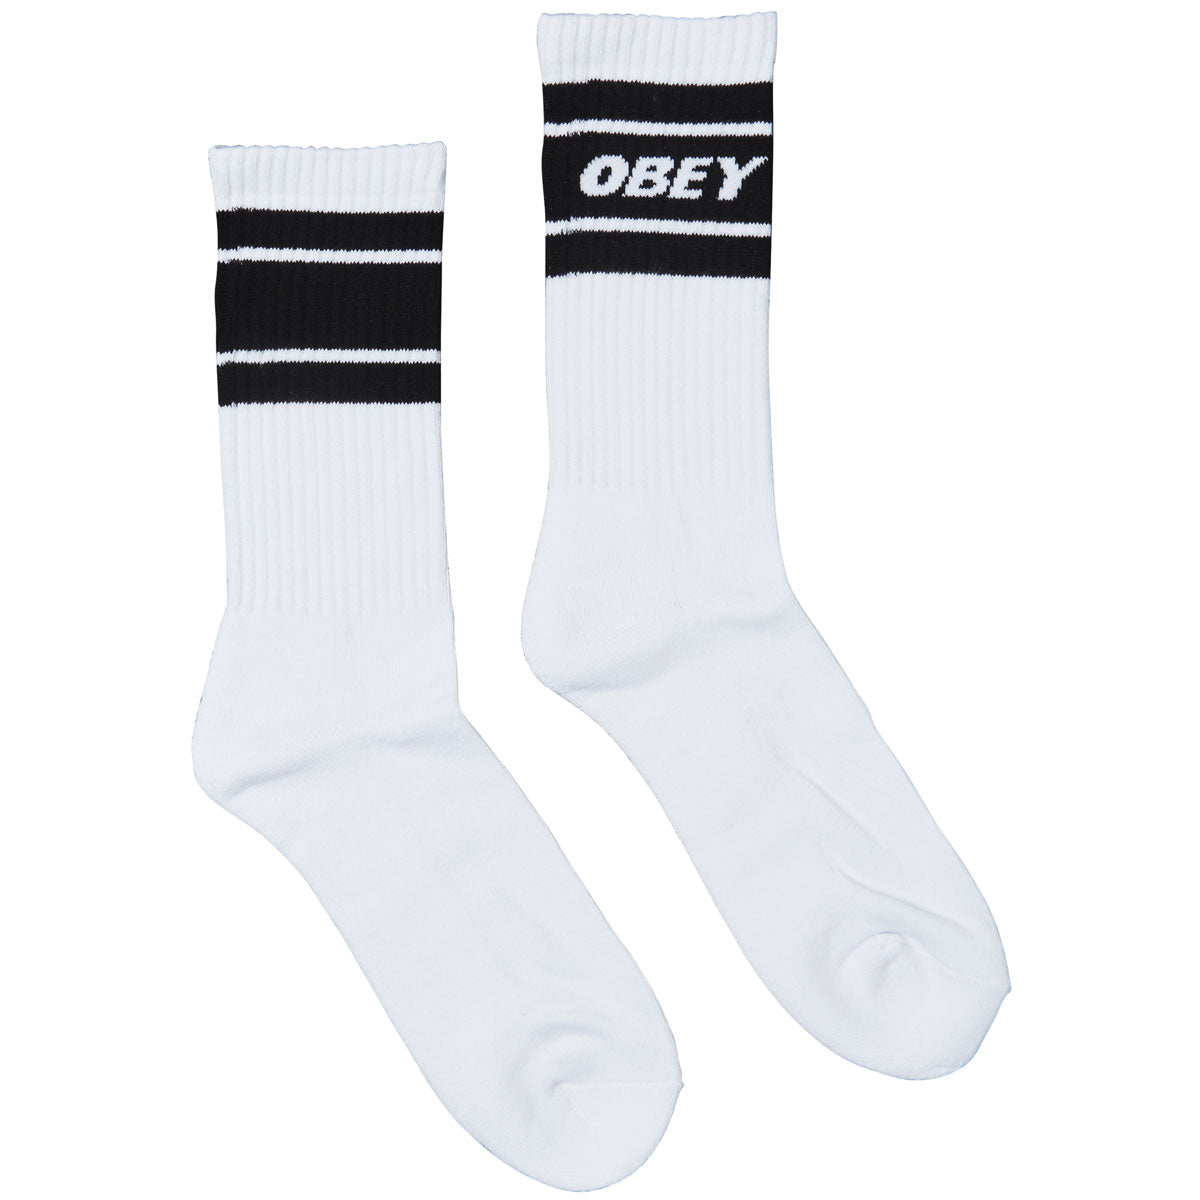 Obey Cooper II Socks - White/Black image 1